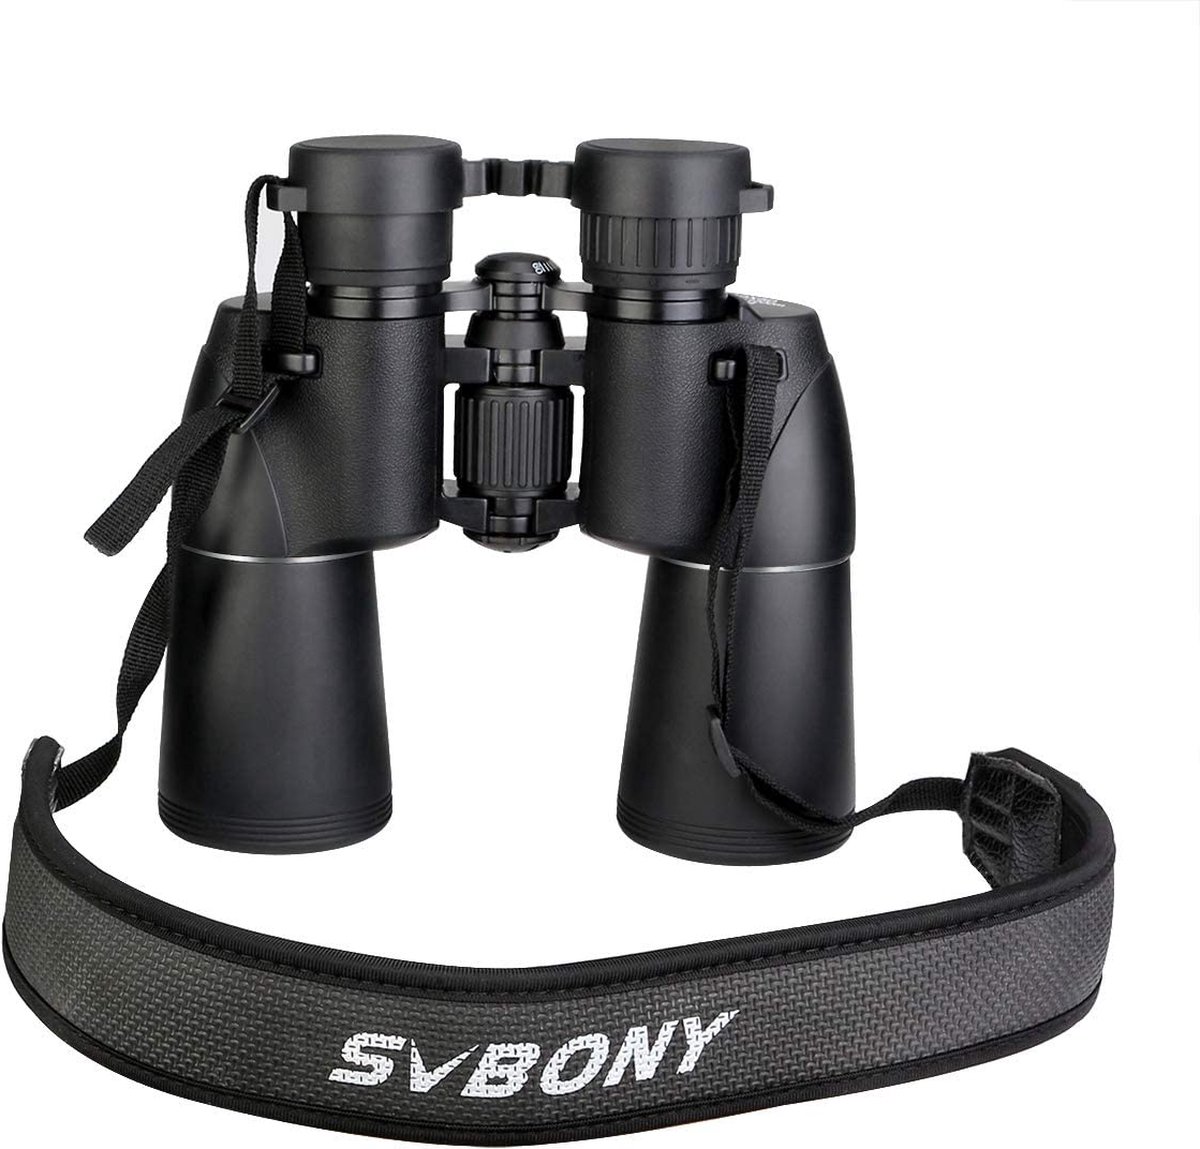 SVBony - SV206 - Verrekijker - 10x50 - Verrekijker voor Volwassenen - HD FMC-lens - Bak4 - Porroprisma - Waterdichte Verrekijker - Nekriem - Draagtas - Geschikt voor Vogels Kijken - Sterrenkijken - Maan - Safari